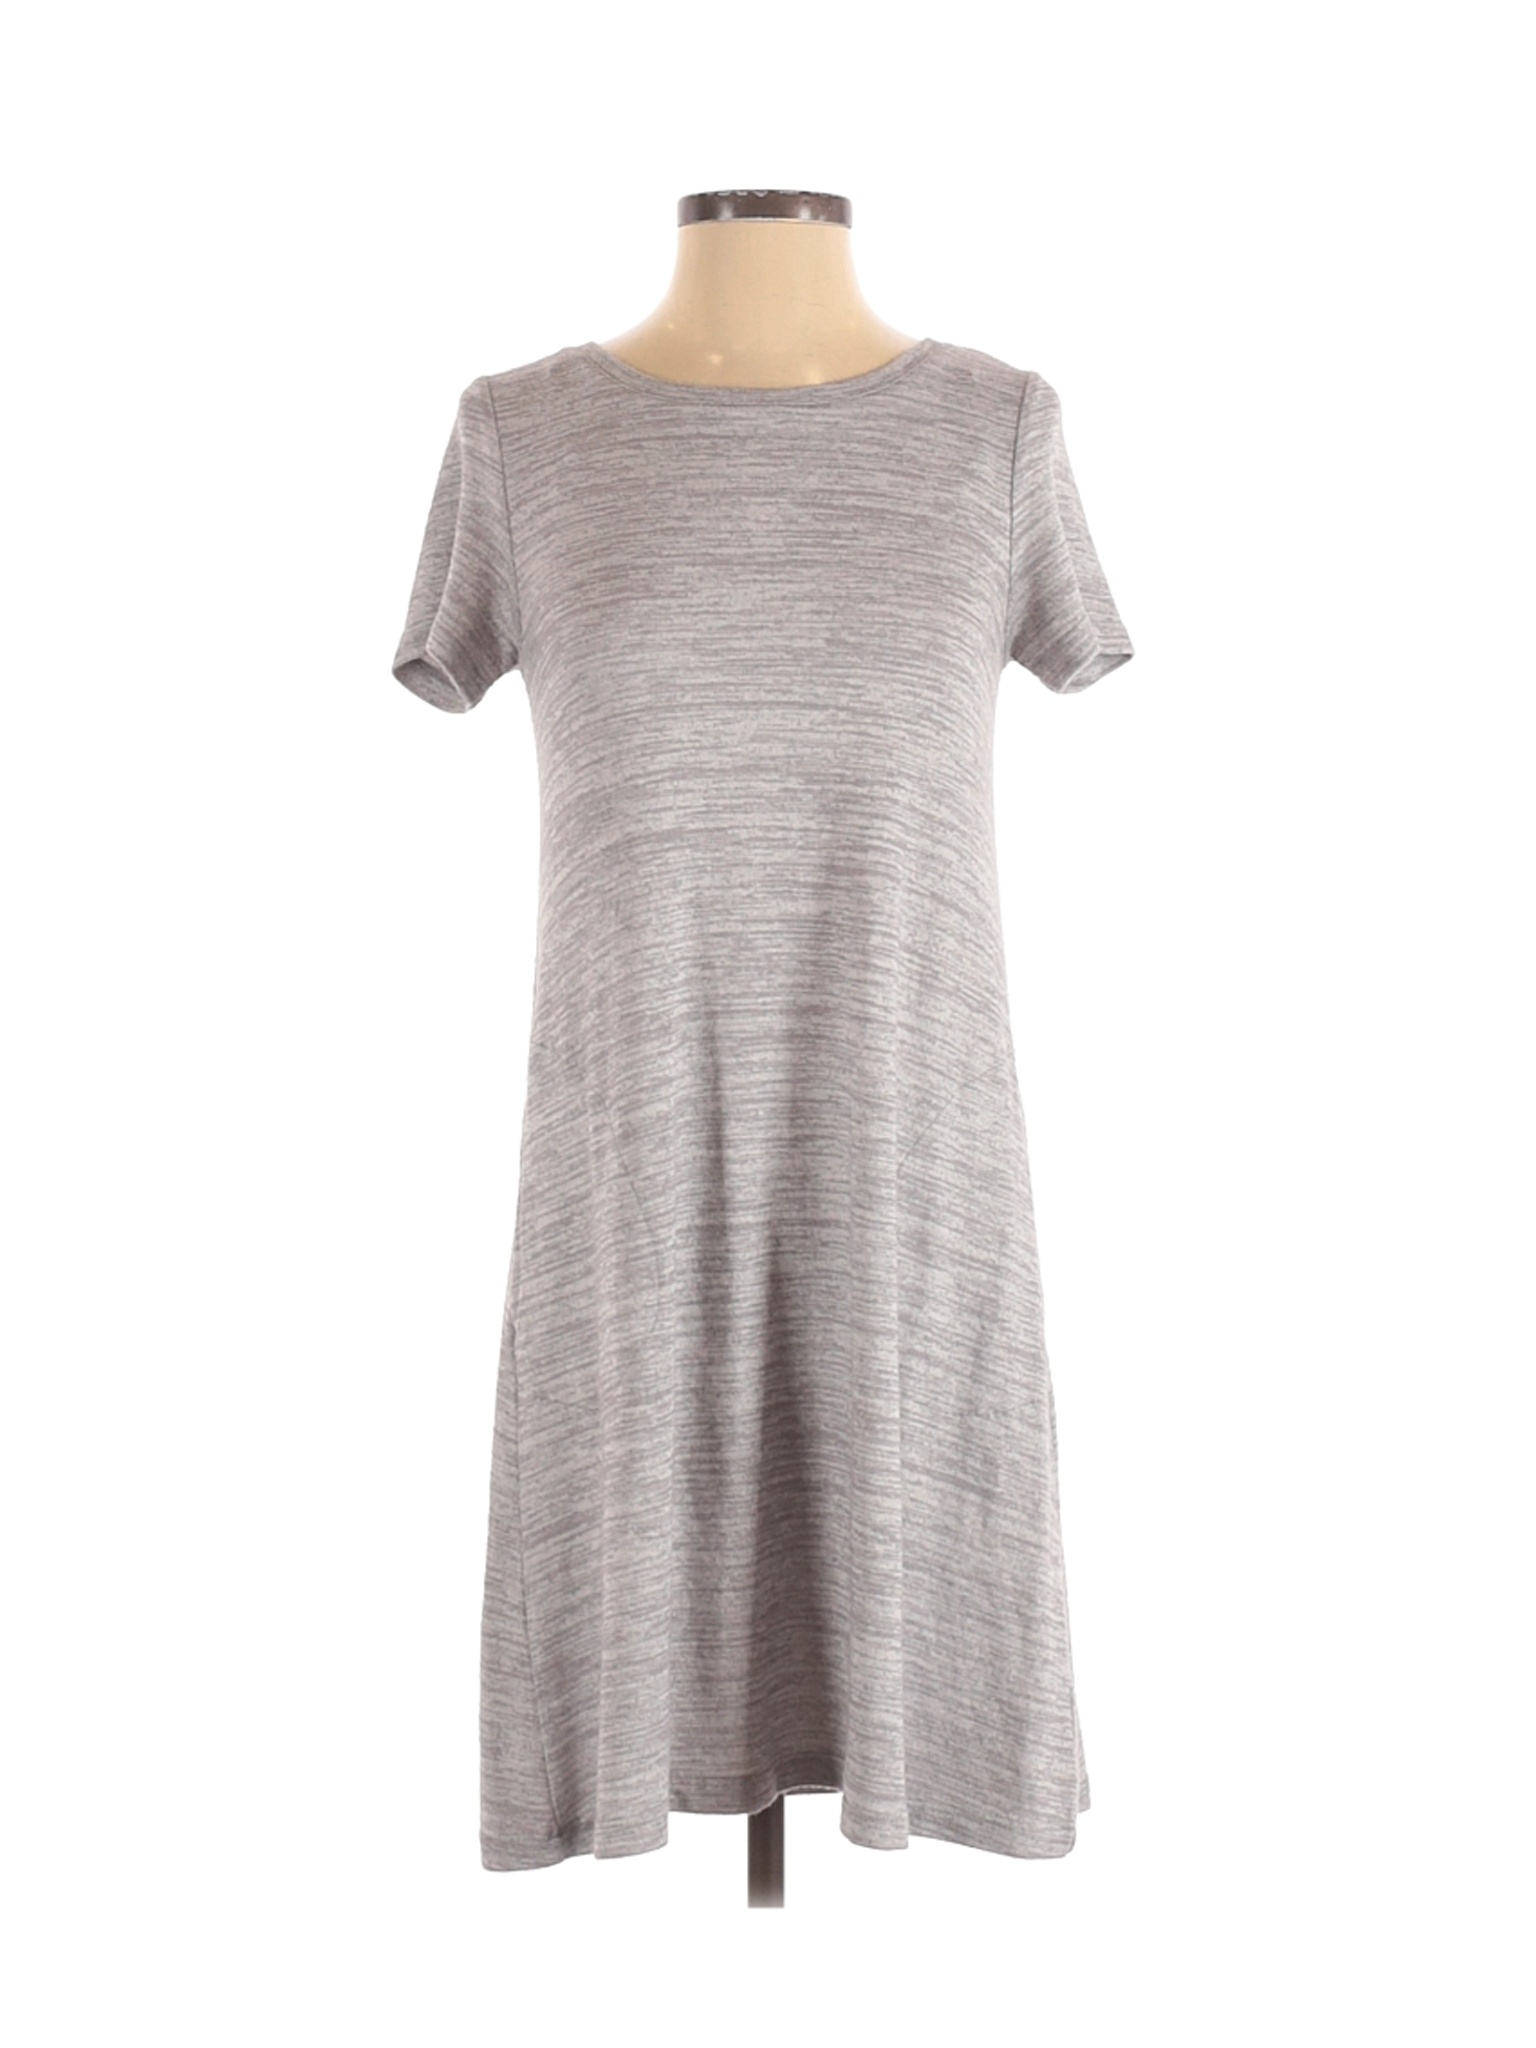 Eliane Rose Women Gray Casual Dress S | eBay